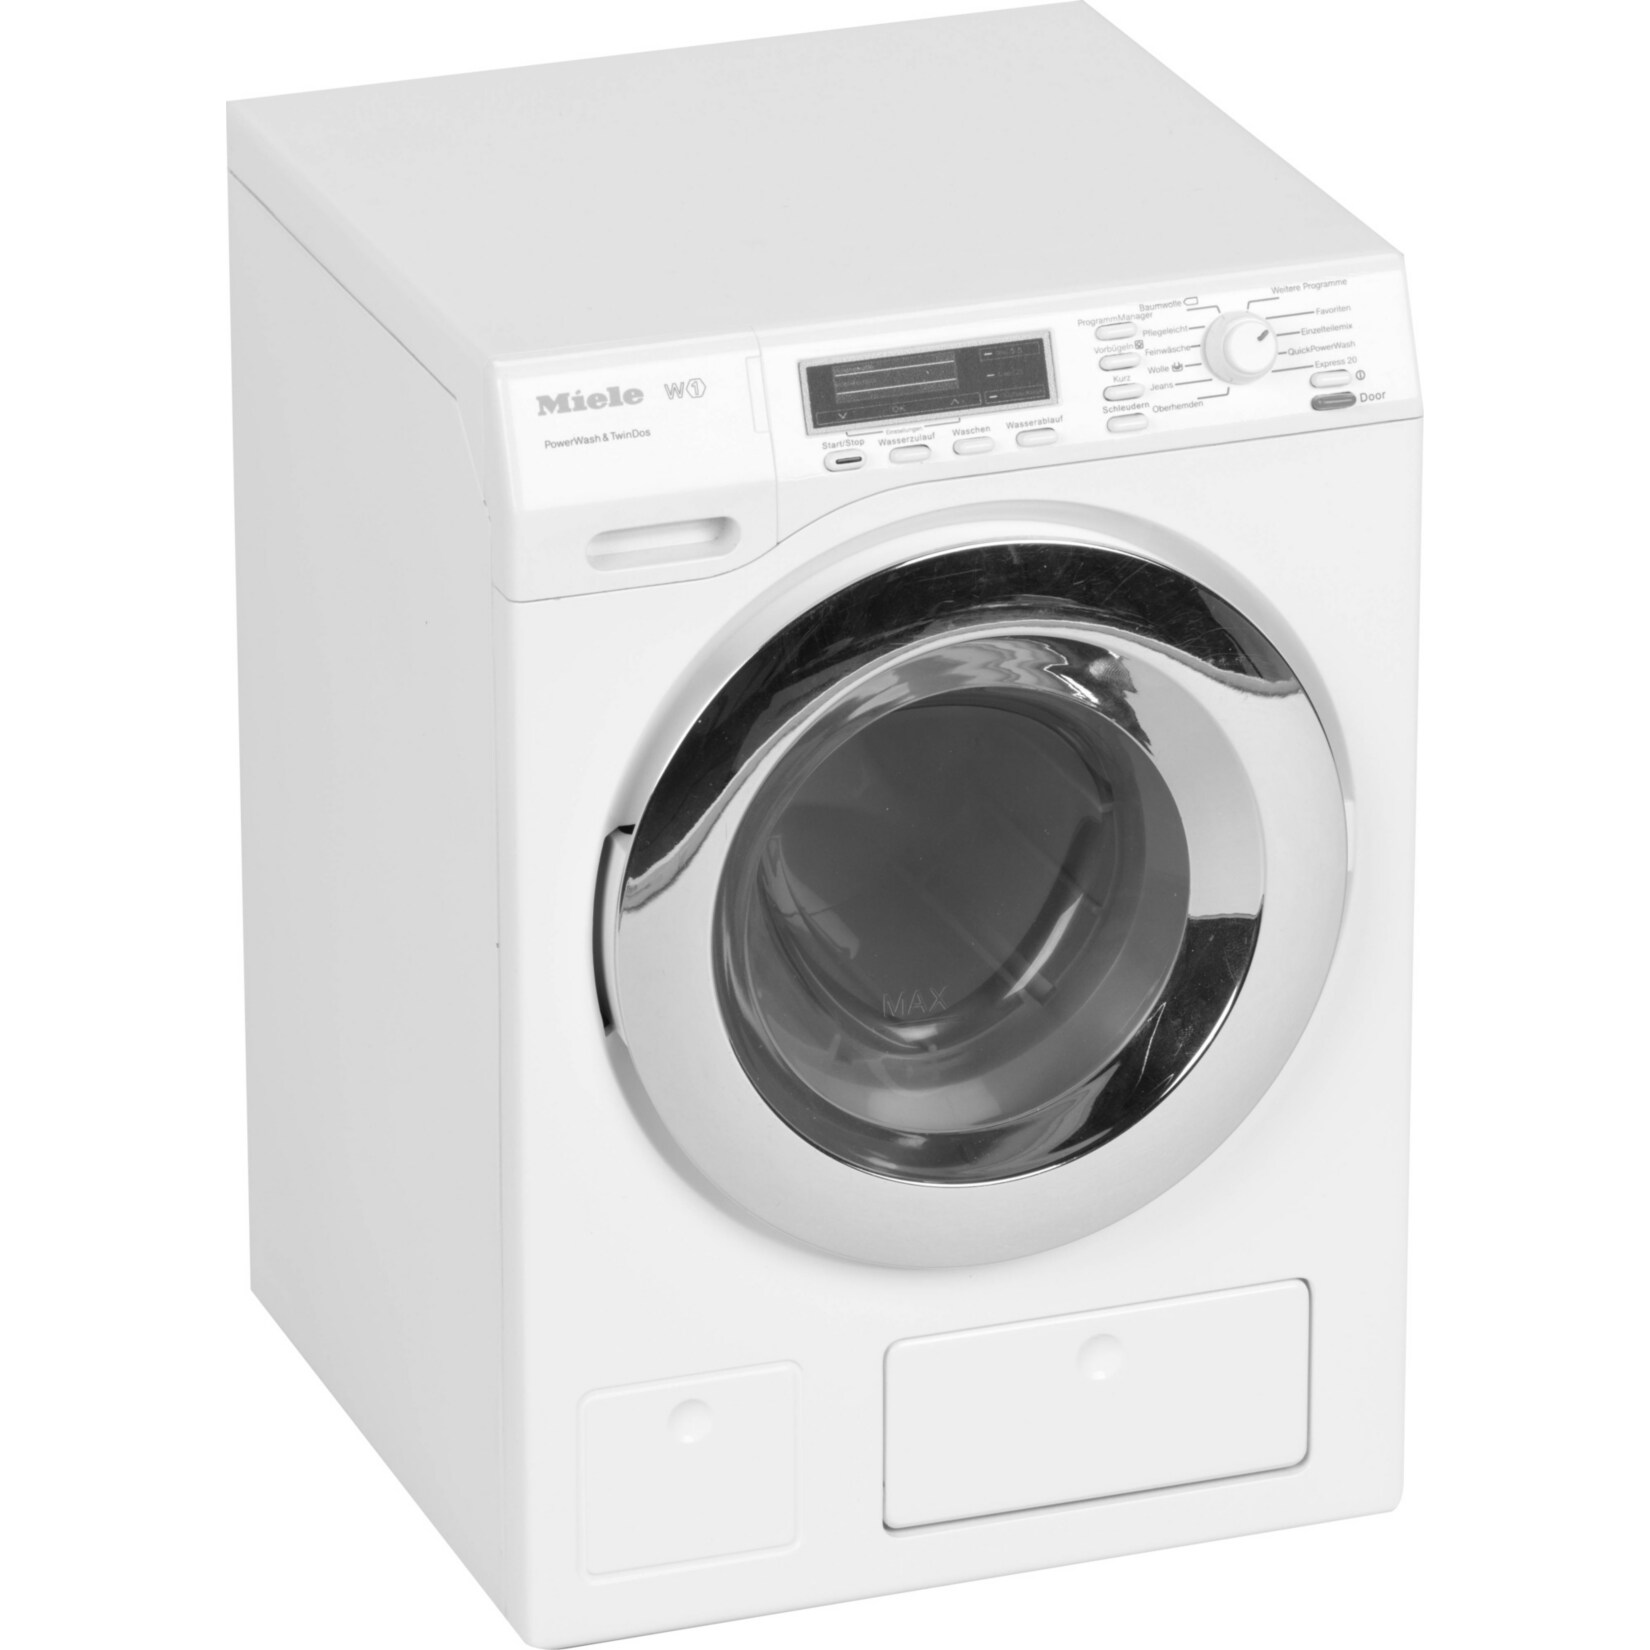 Theo Klein Kinderhaushaltsgerät Miele Waschmaschine